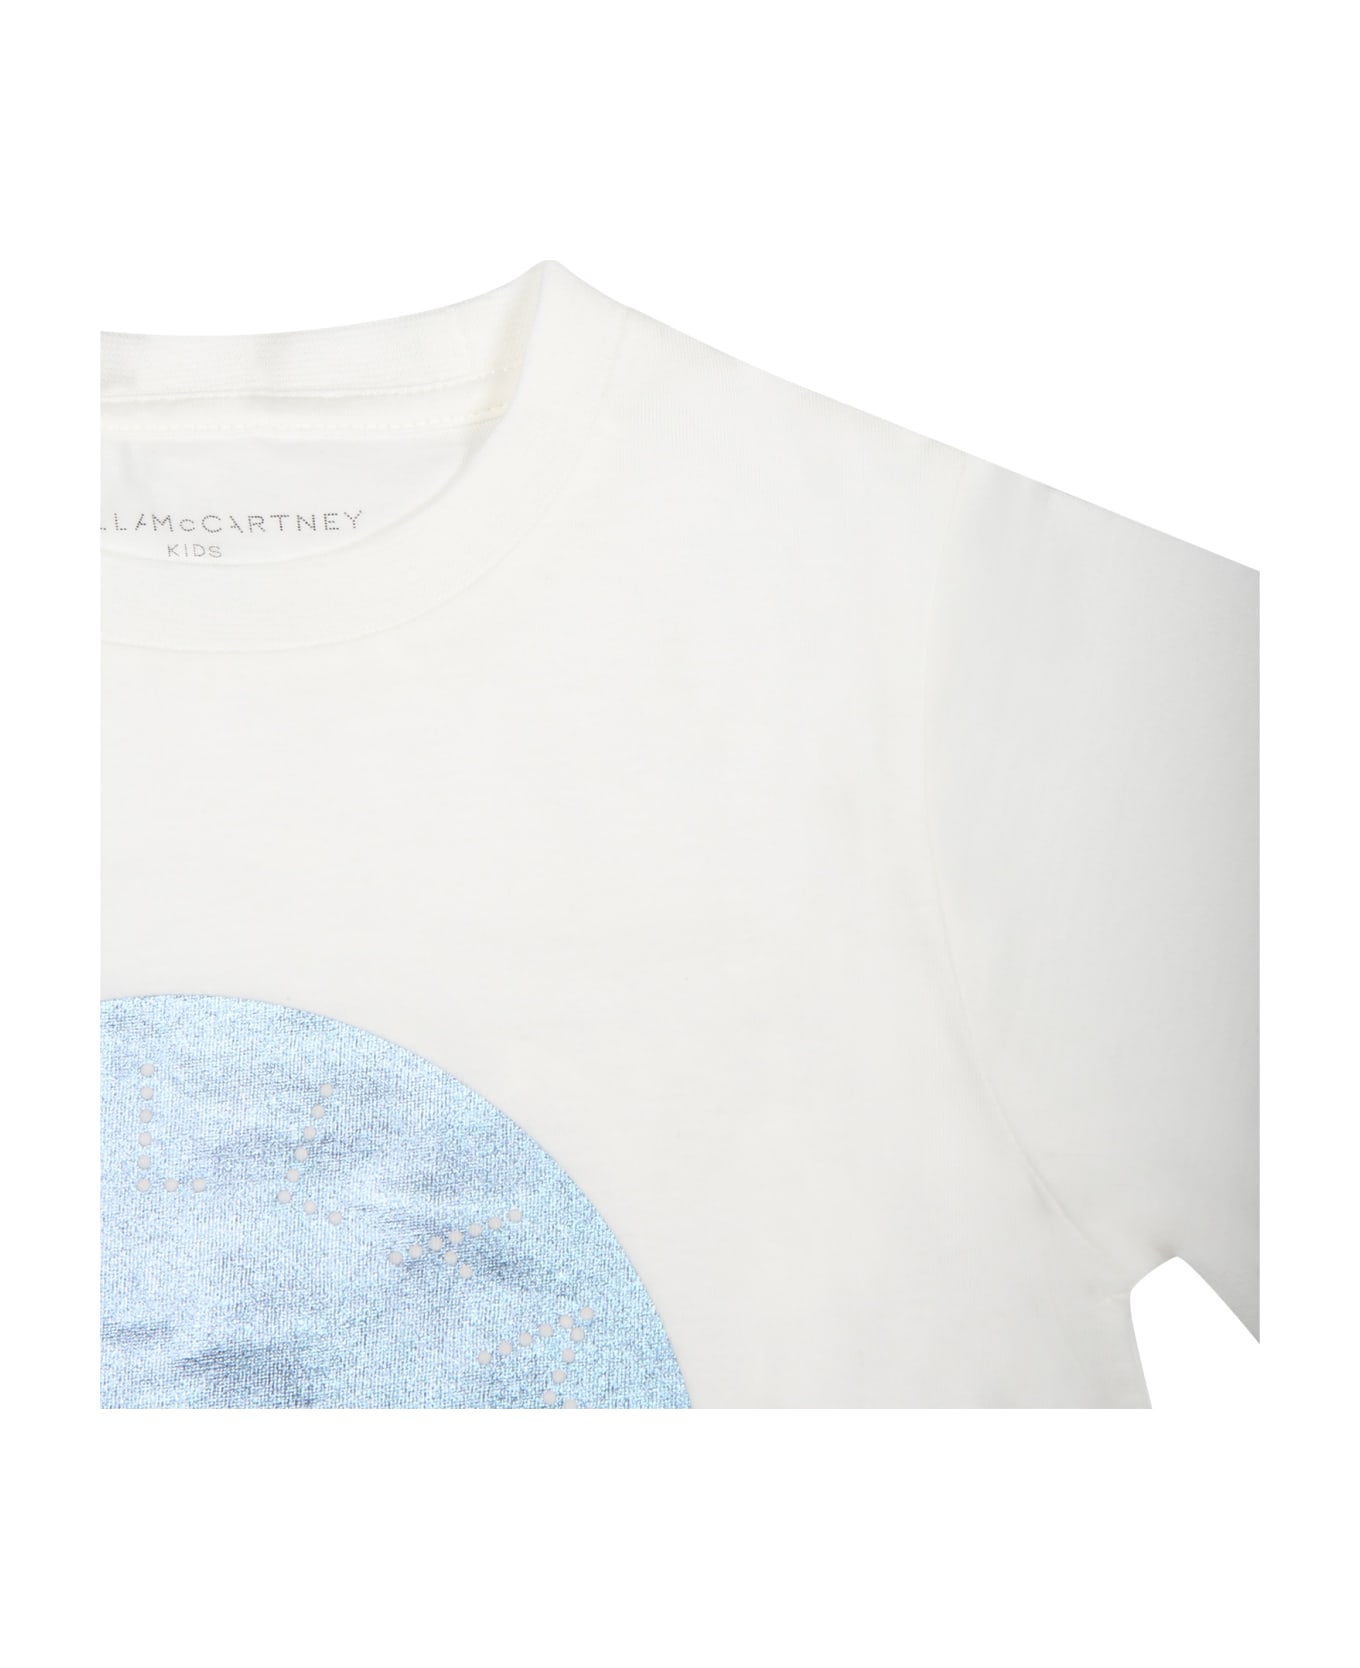 Stella McCartney Kids White T-shirt For Girl With Logo - White